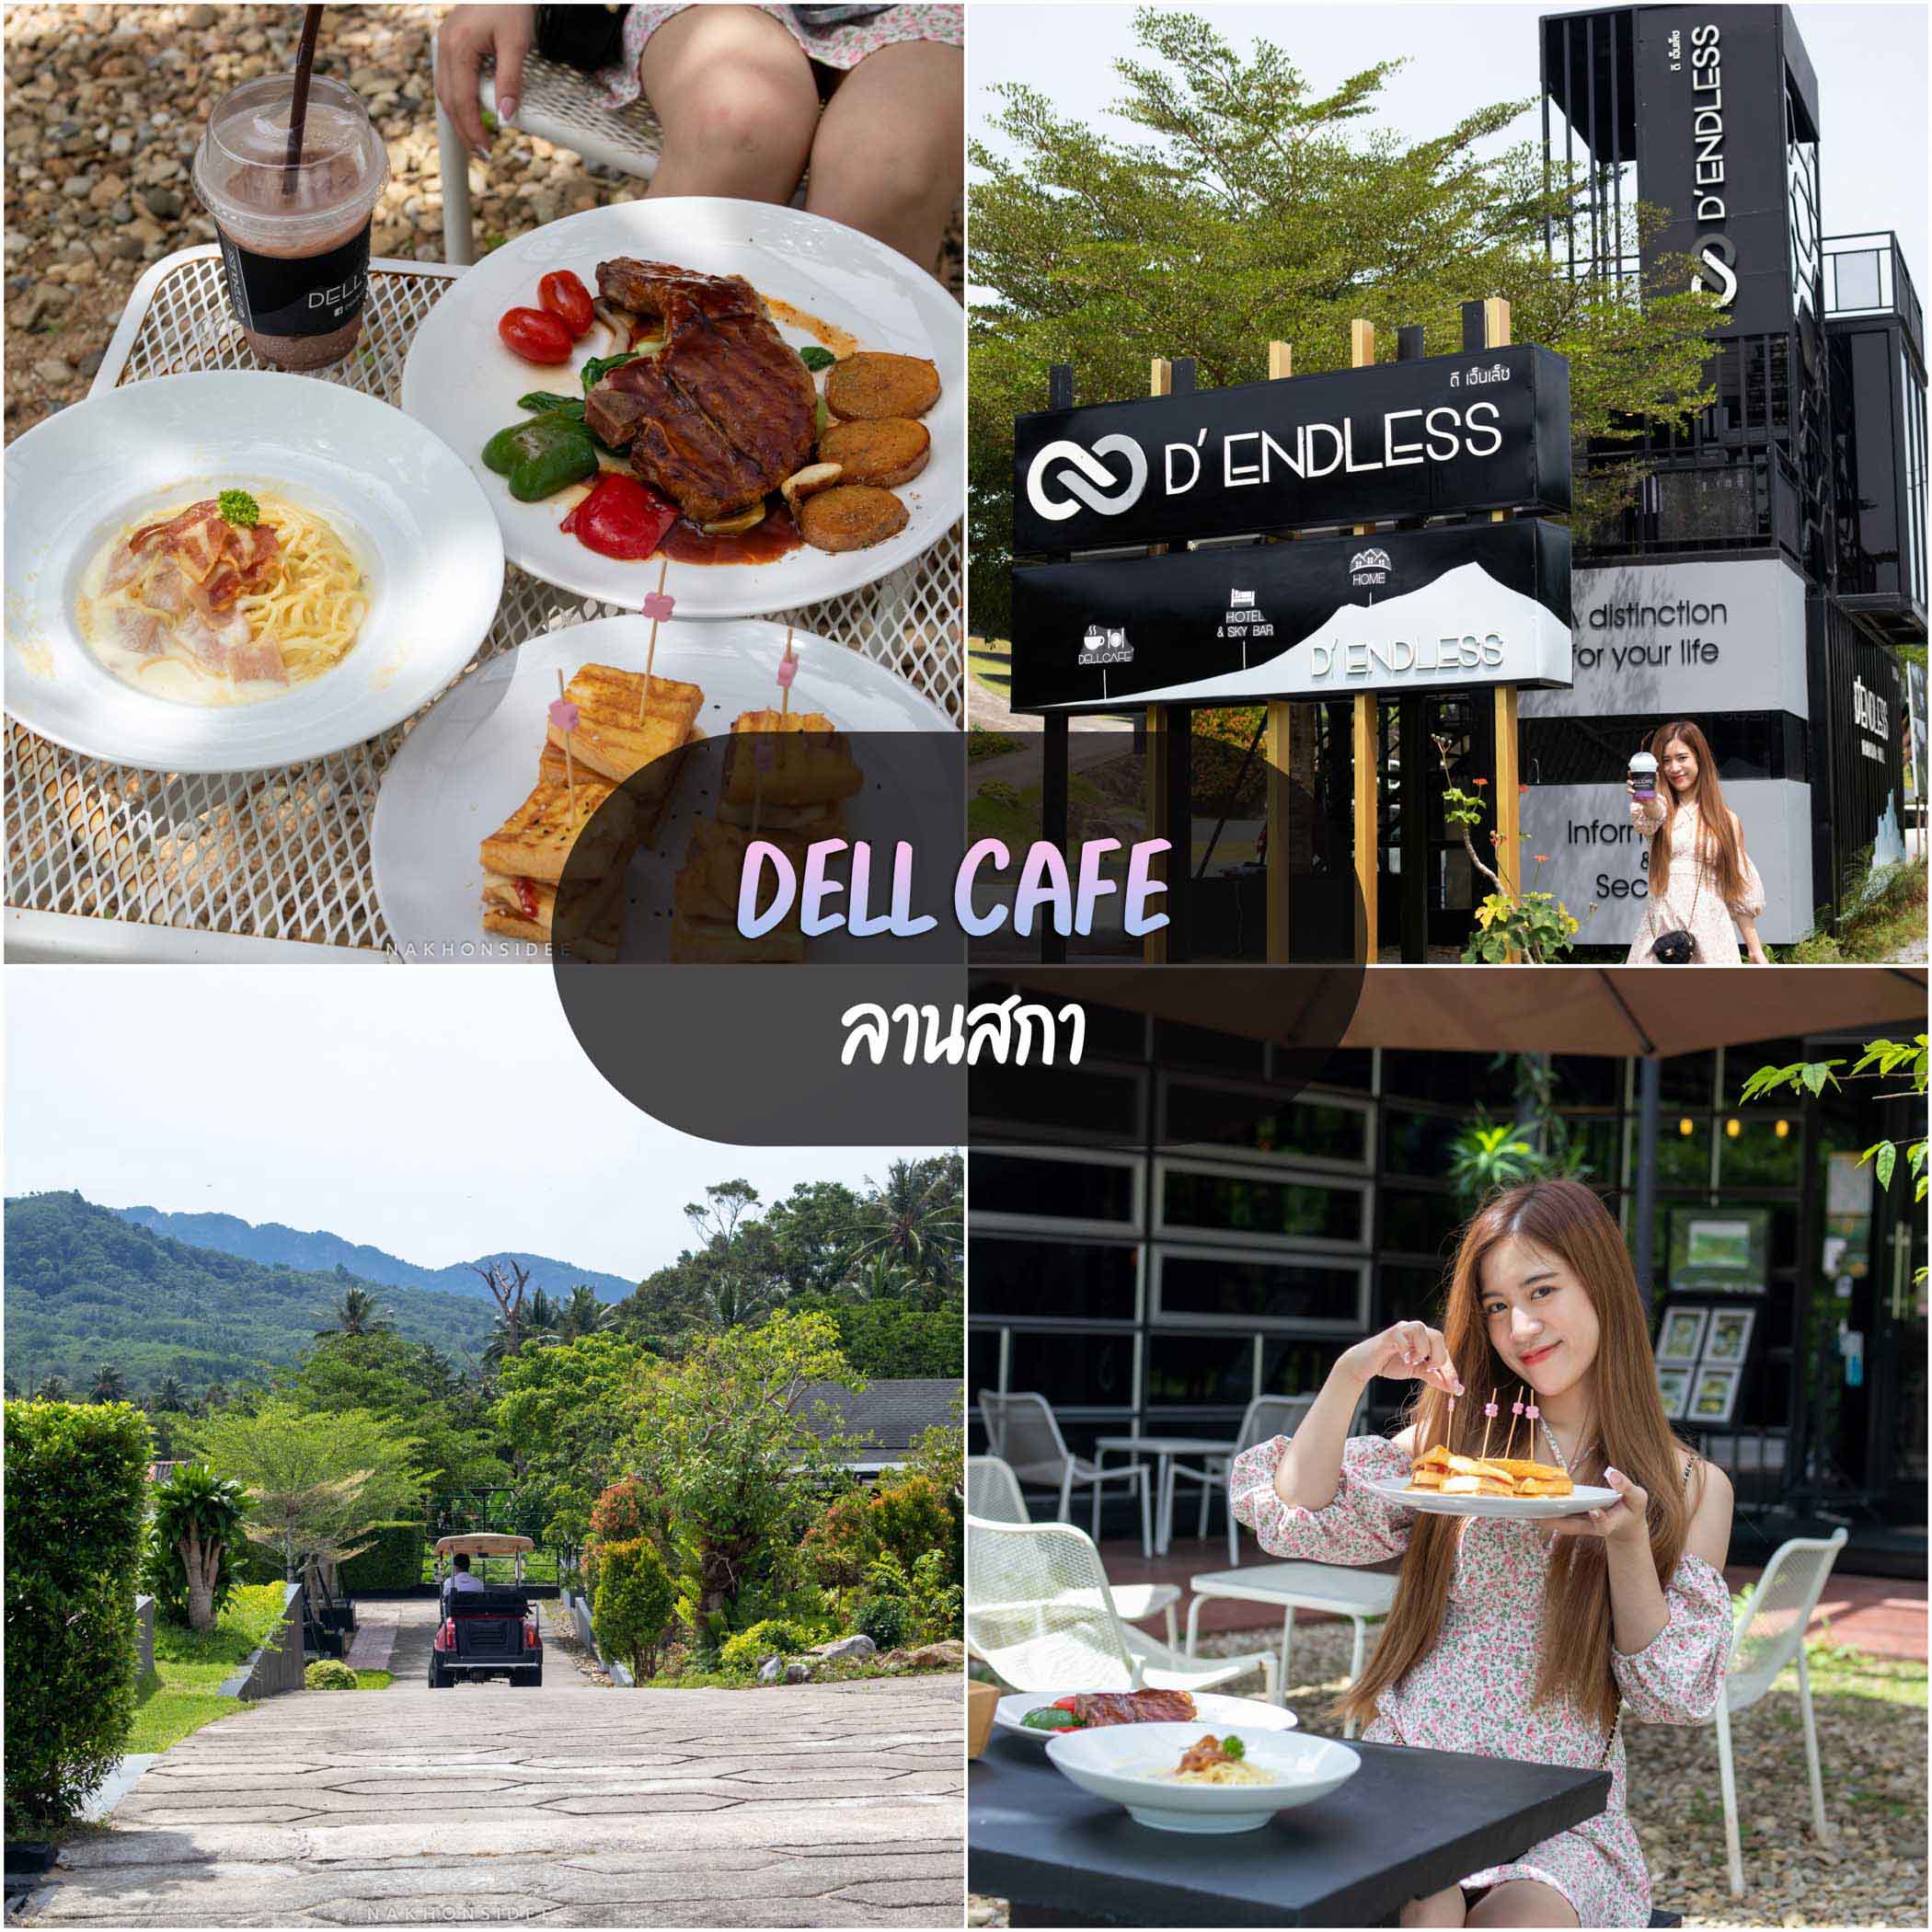 Dell-Cafe  ร้านอาหารนครศรีธรรมราช,ของกิน,ร้านอาหาร,อร่อย,ก๋วยเตี๋ยว,คาเฟ่,ร้านเด็ด,ชาบู,ปิ้งย่าง,อาหารญี่ปุ่น,ร้านอร่อย,อาหารพื้นบ้าน